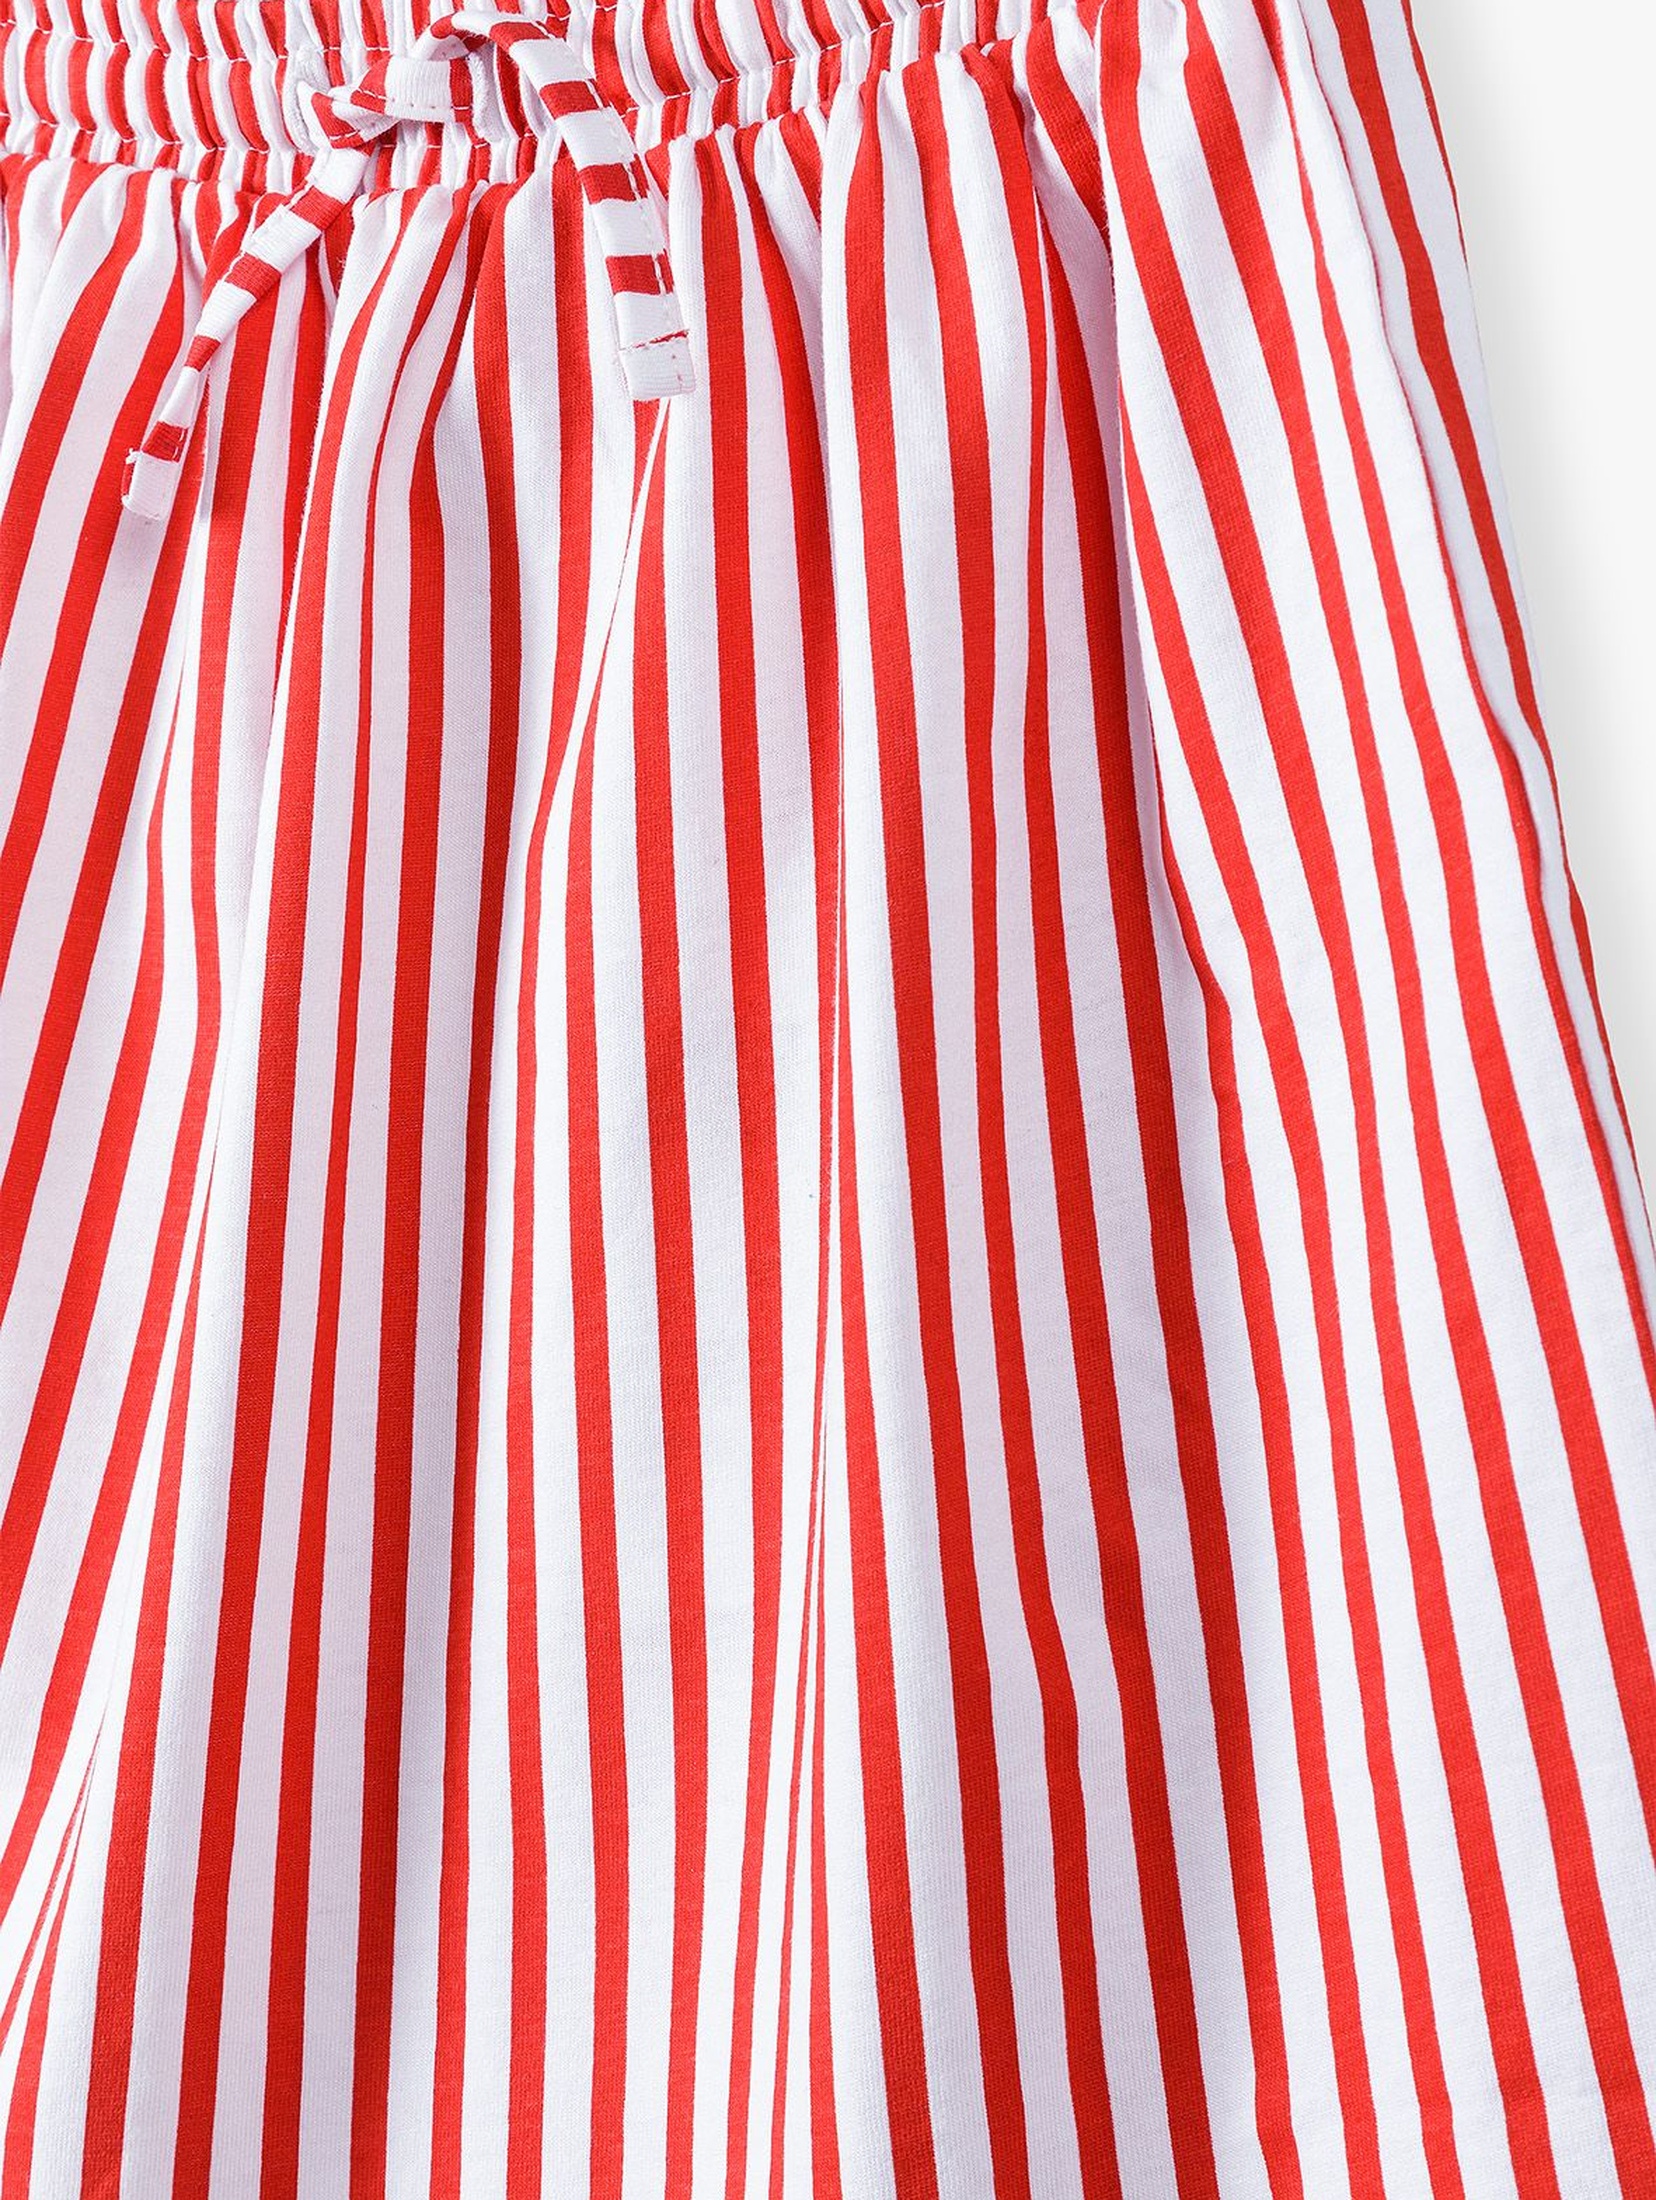 Bawełniana spódnica dla dziewczynki - biało - czerwone paski